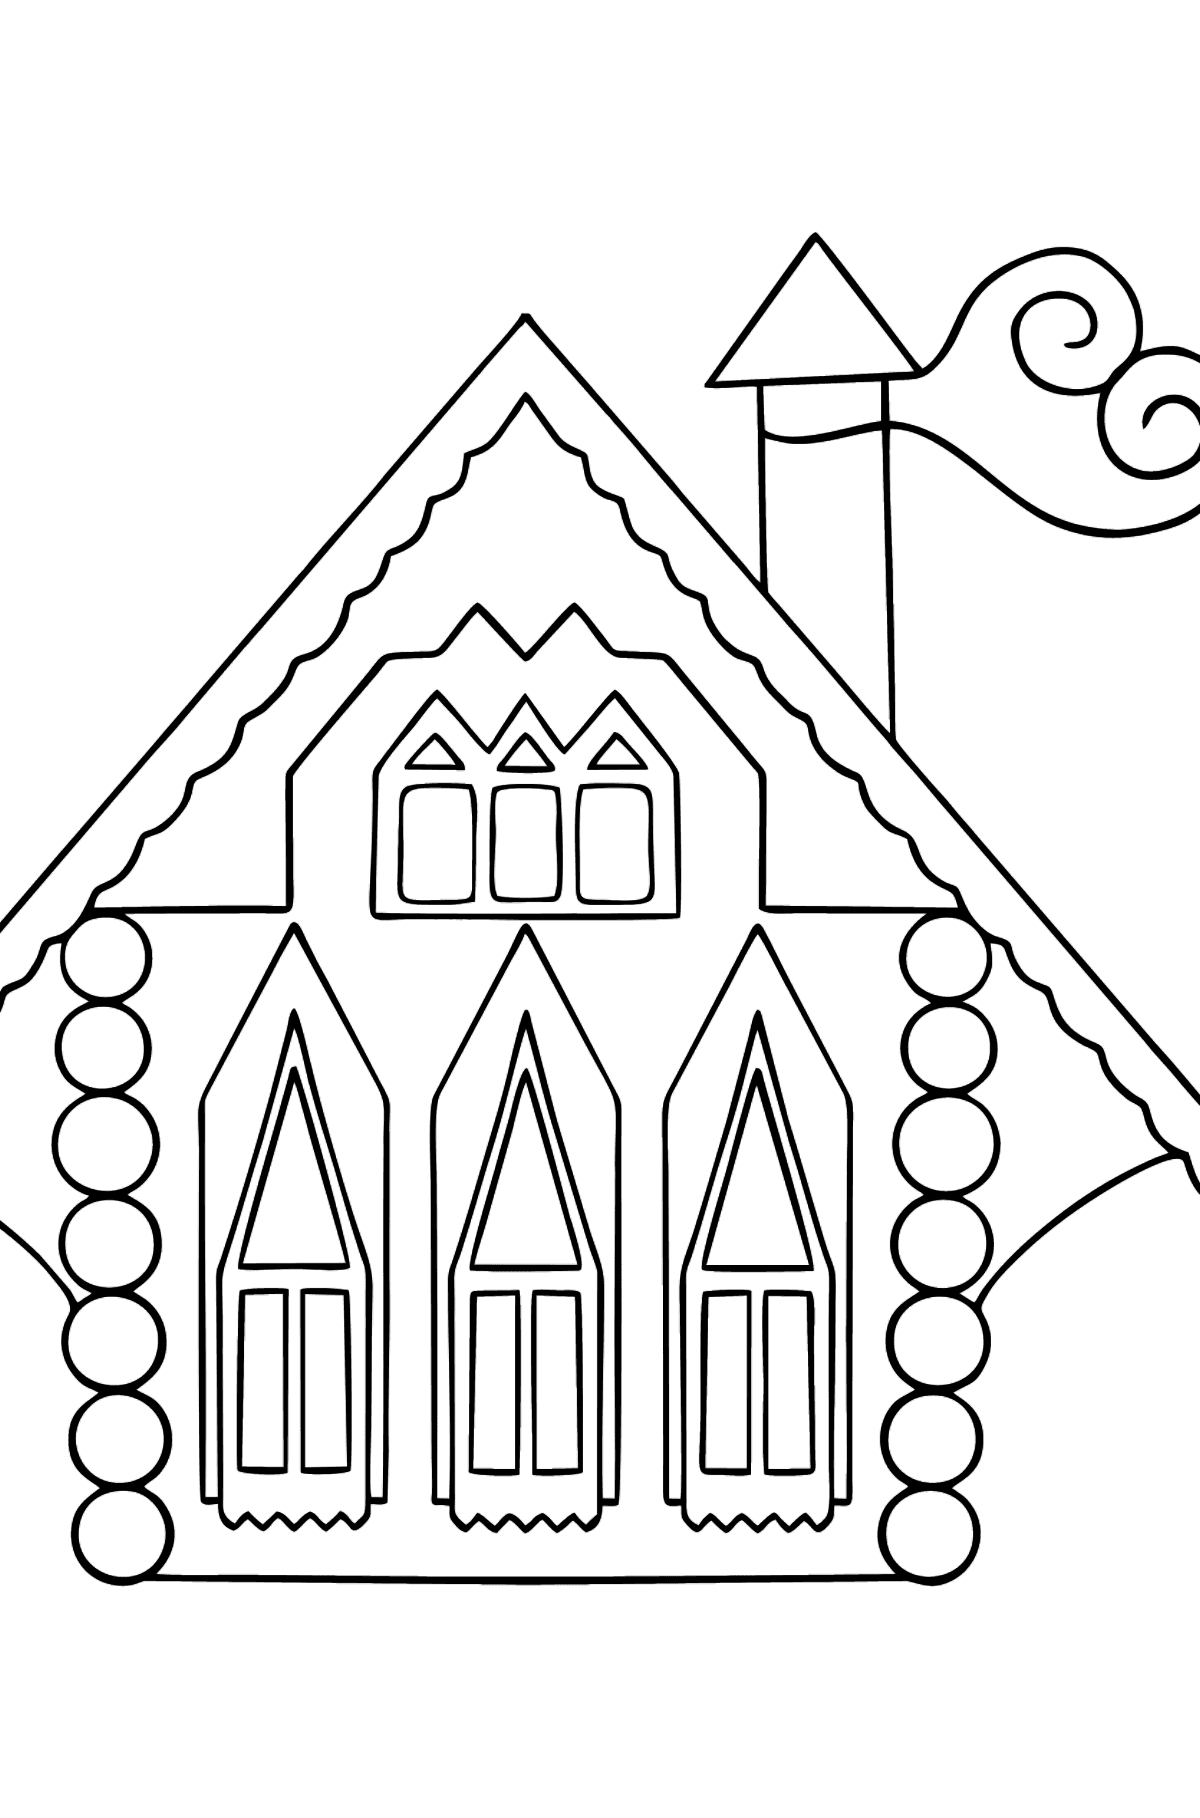 Раскраска Радужный домик (сложно) - Картинки для Детей